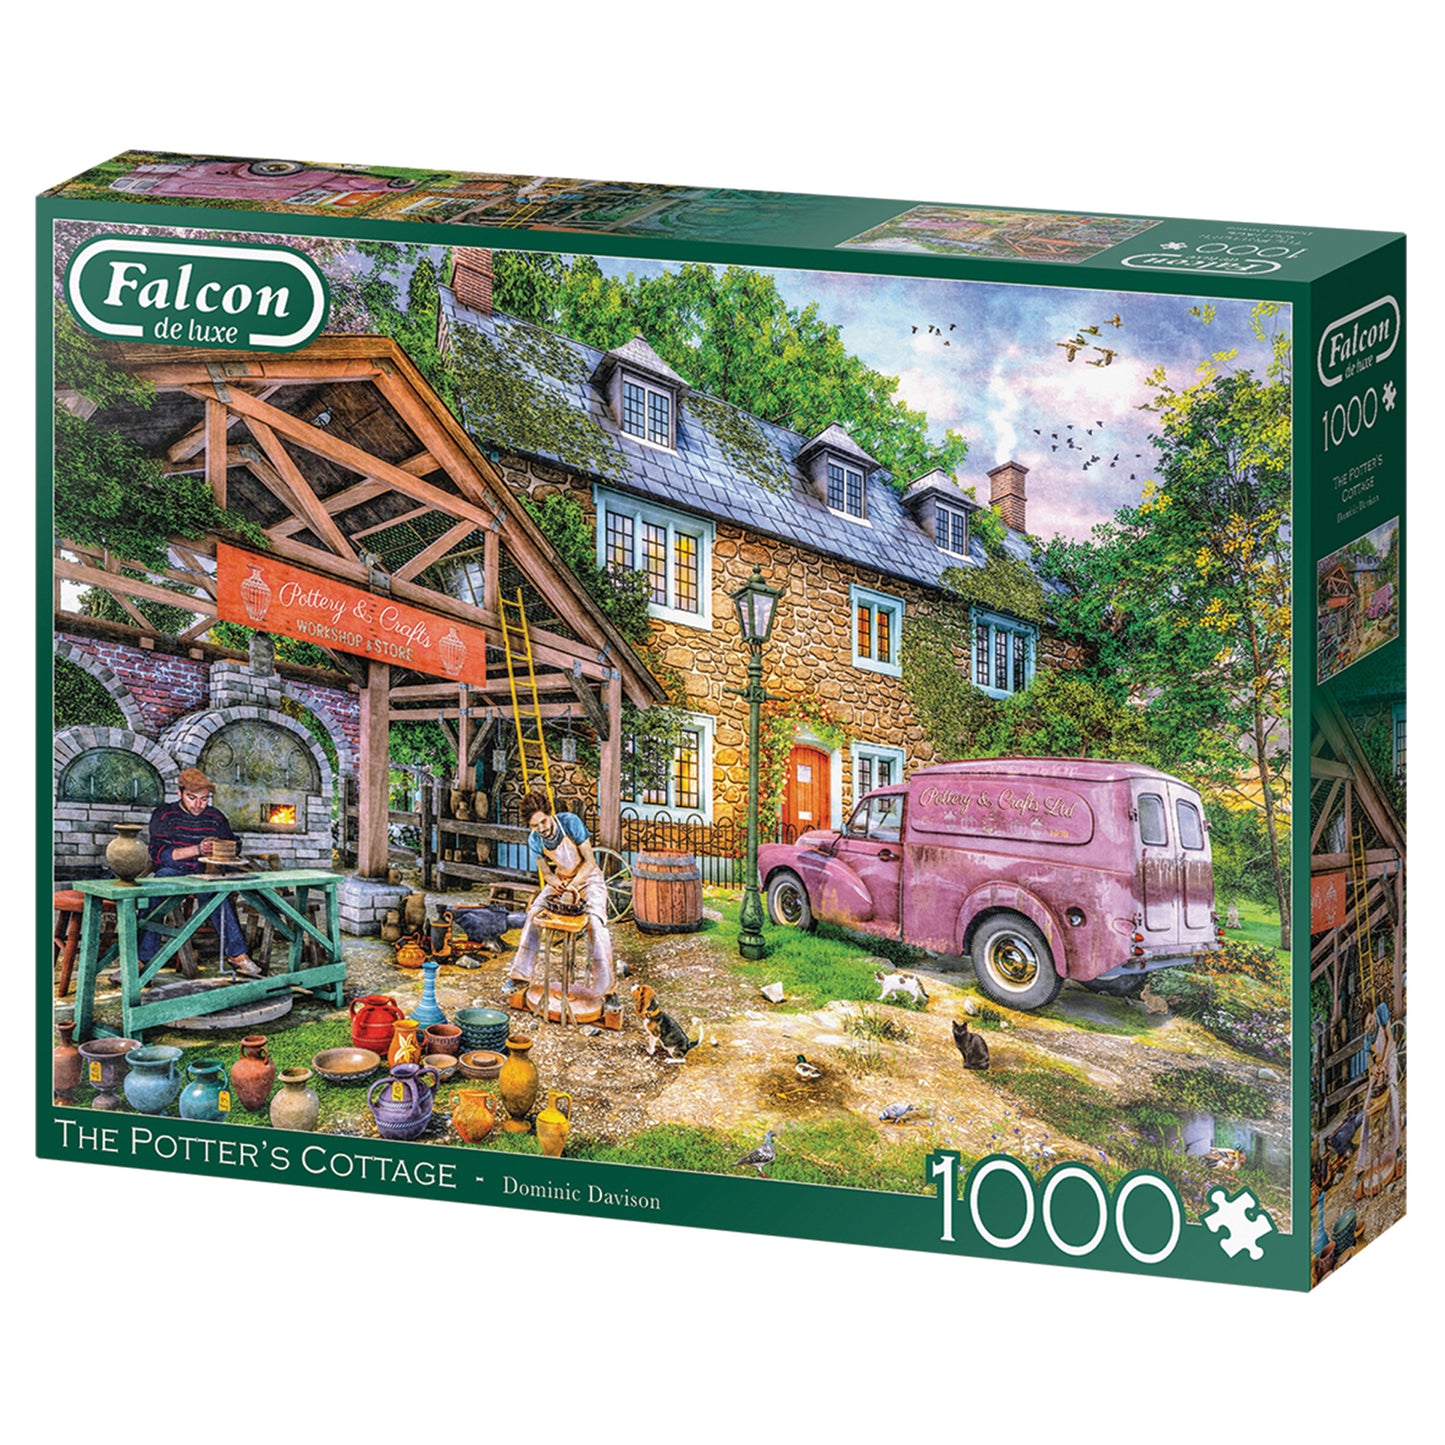 Falcon de luxe - Potters Cottage - 1000 Piece Puzzle